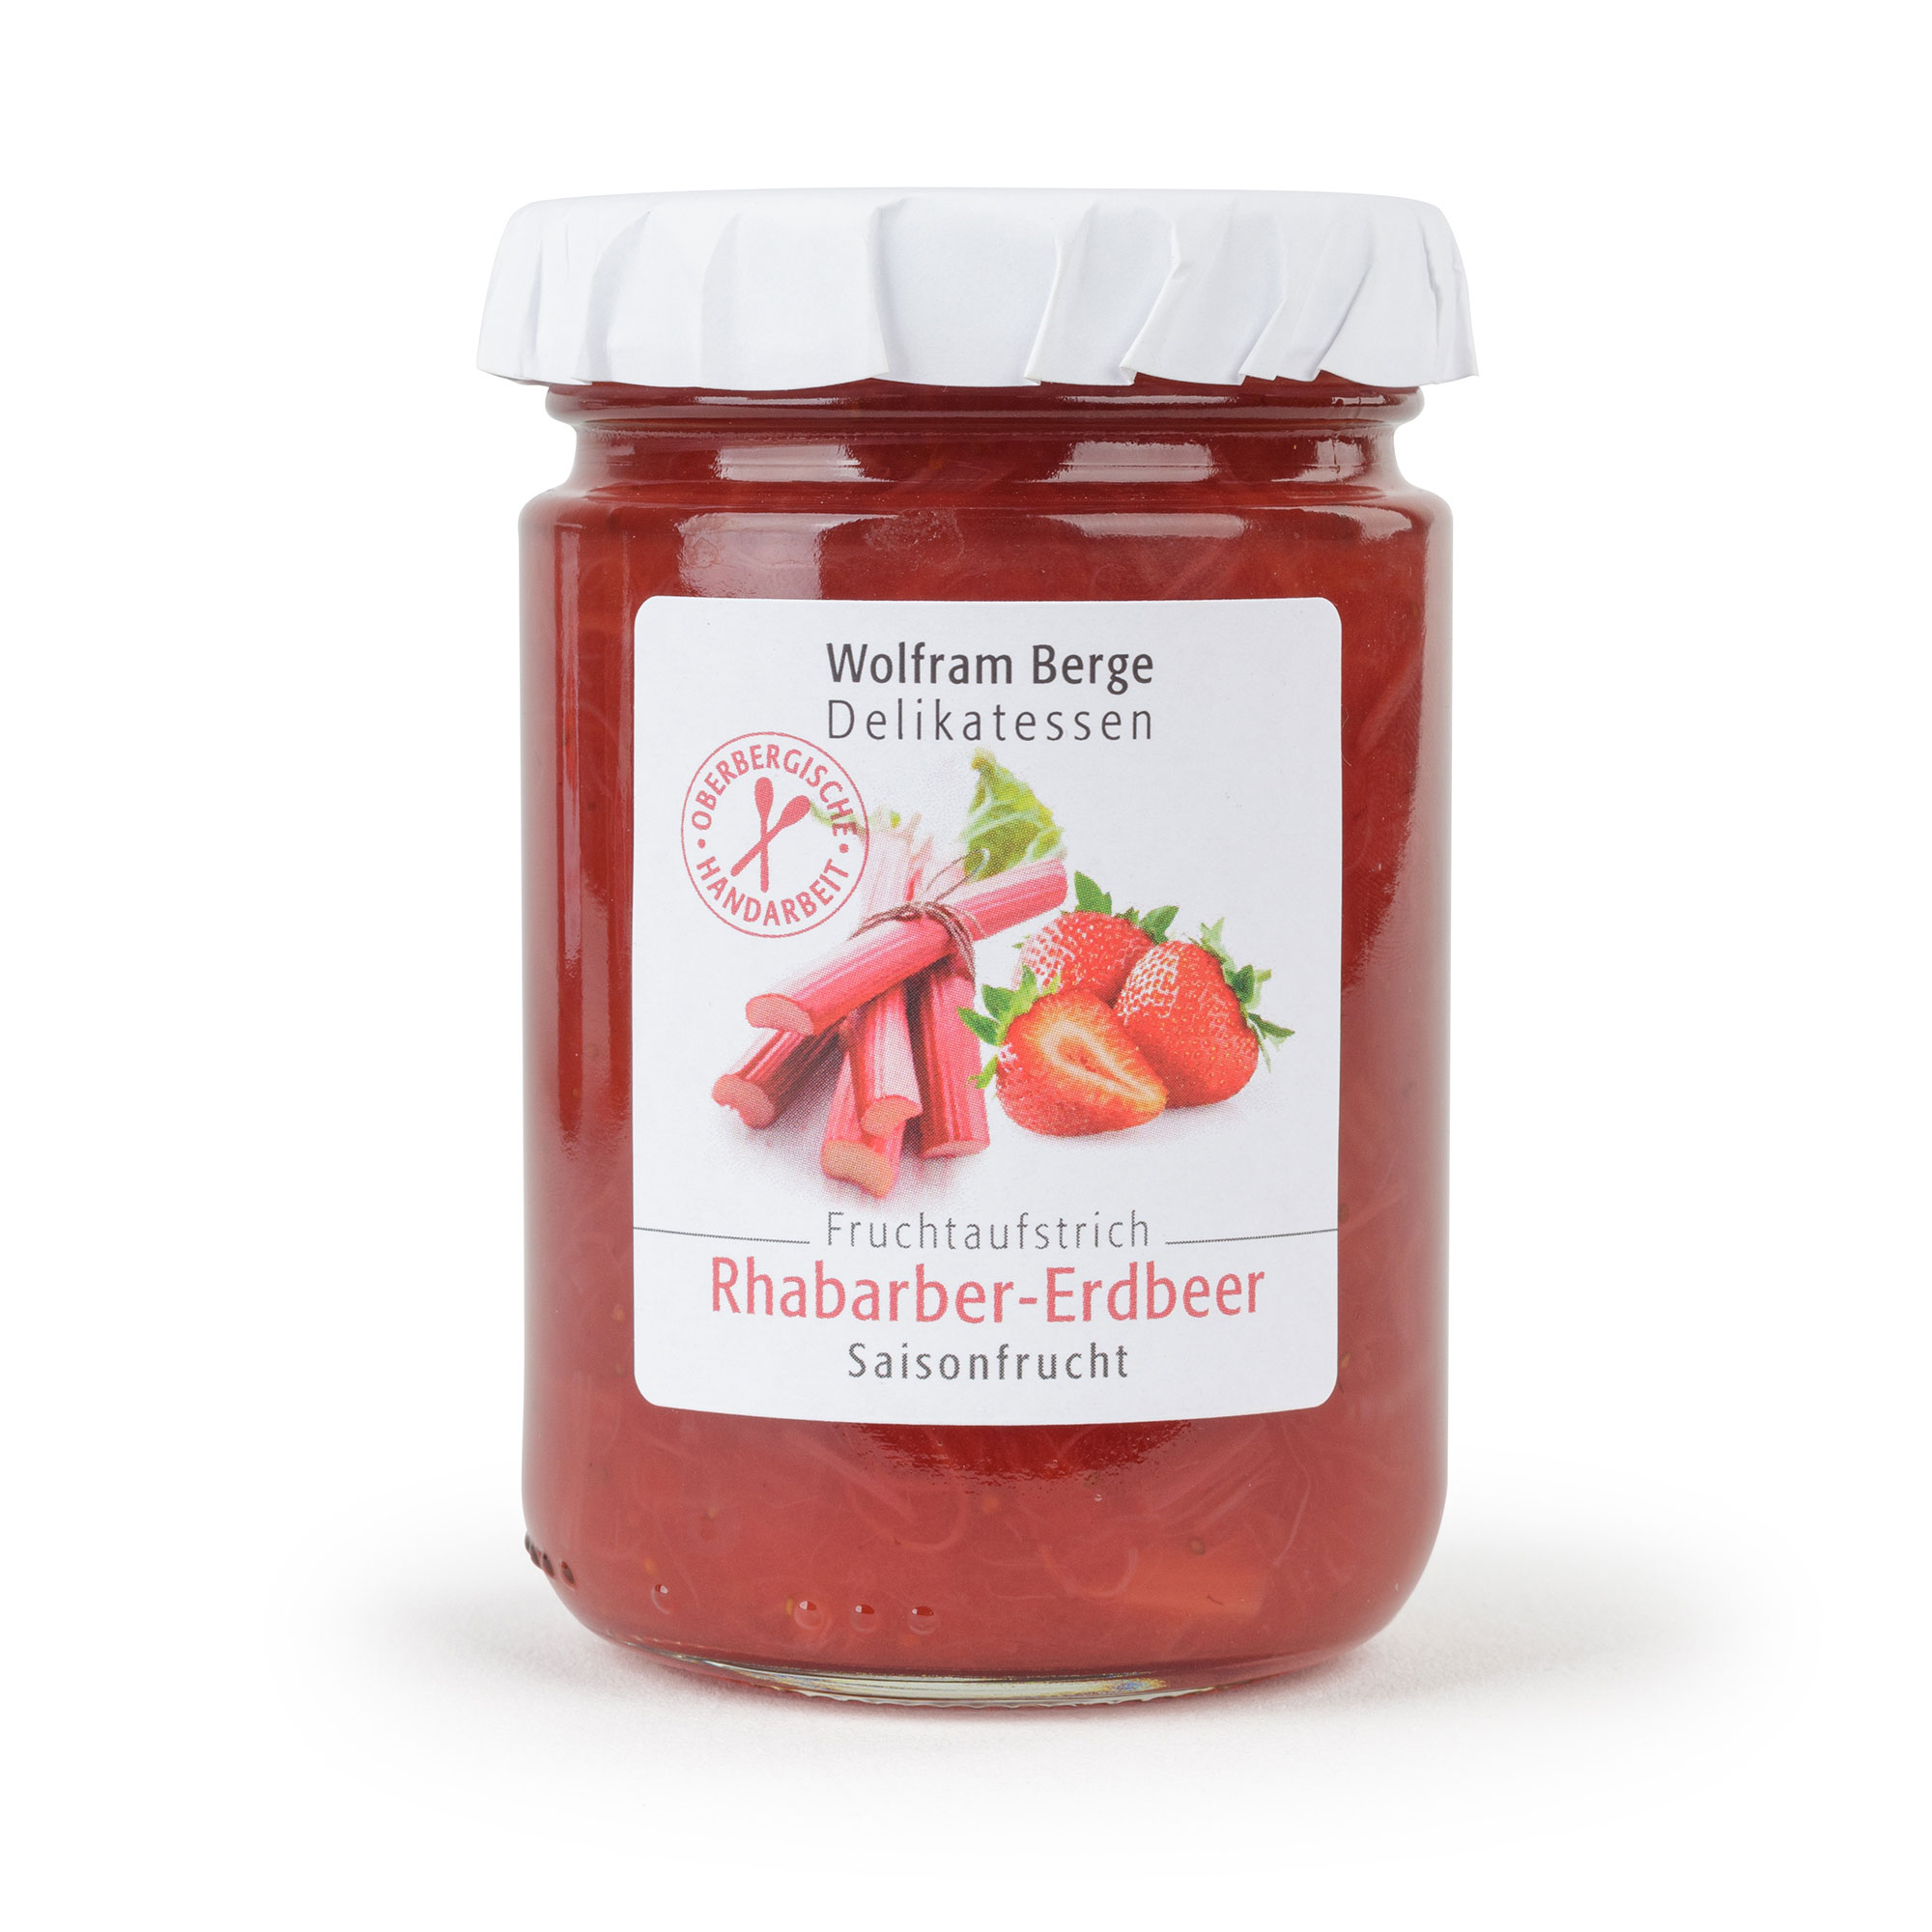 Rhabarber-Erdbeer Fruchtaufstrich mit sizilianischem Blutorangensaft